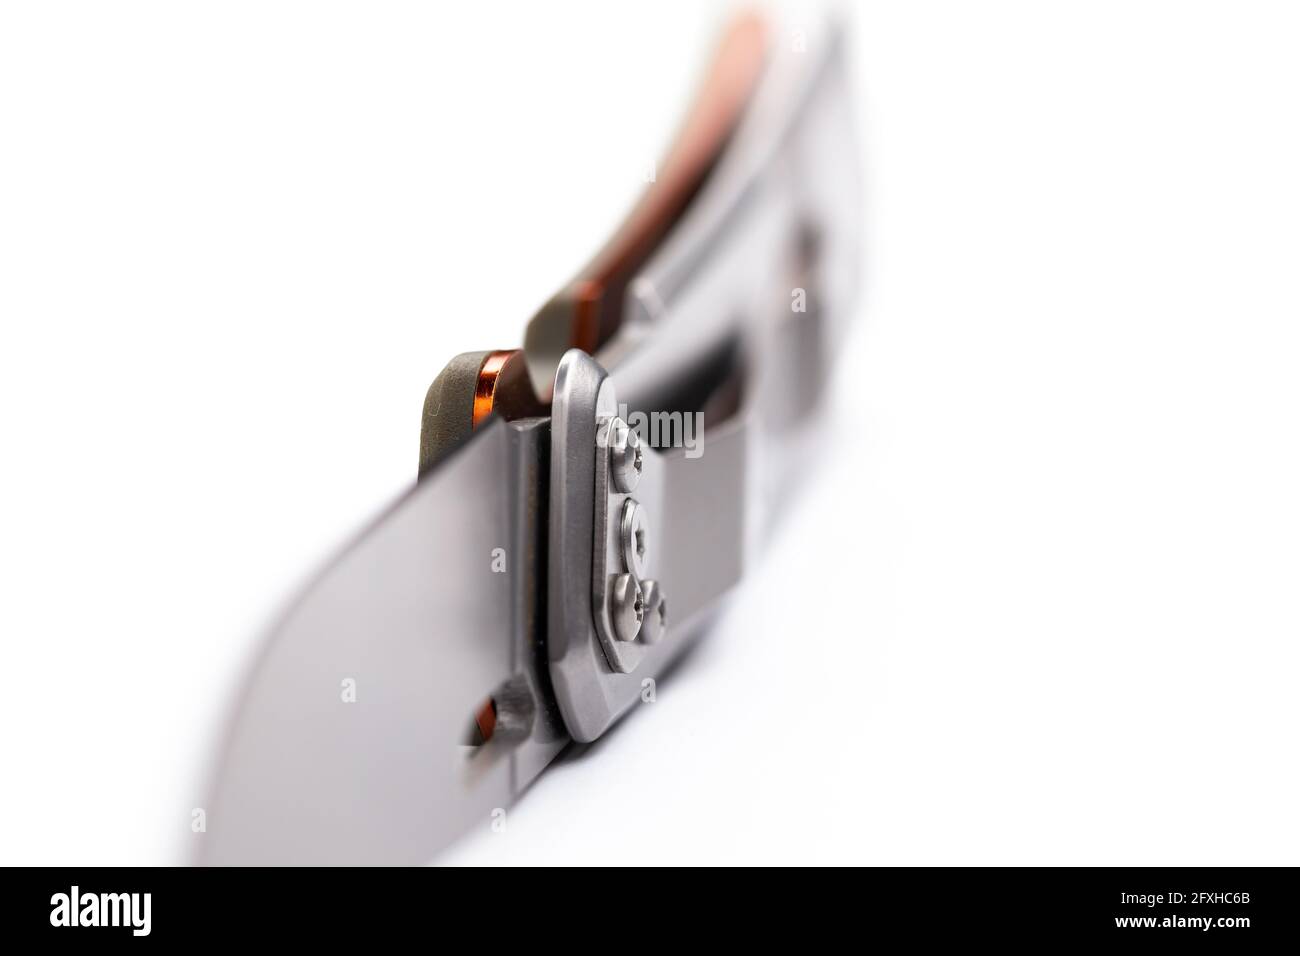 Ein kleines faltbares Jagdmesser isoliert auf dem weißen Hintergrund. Foto aufgenommen unter weichem Kunstlicht. Stockfoto